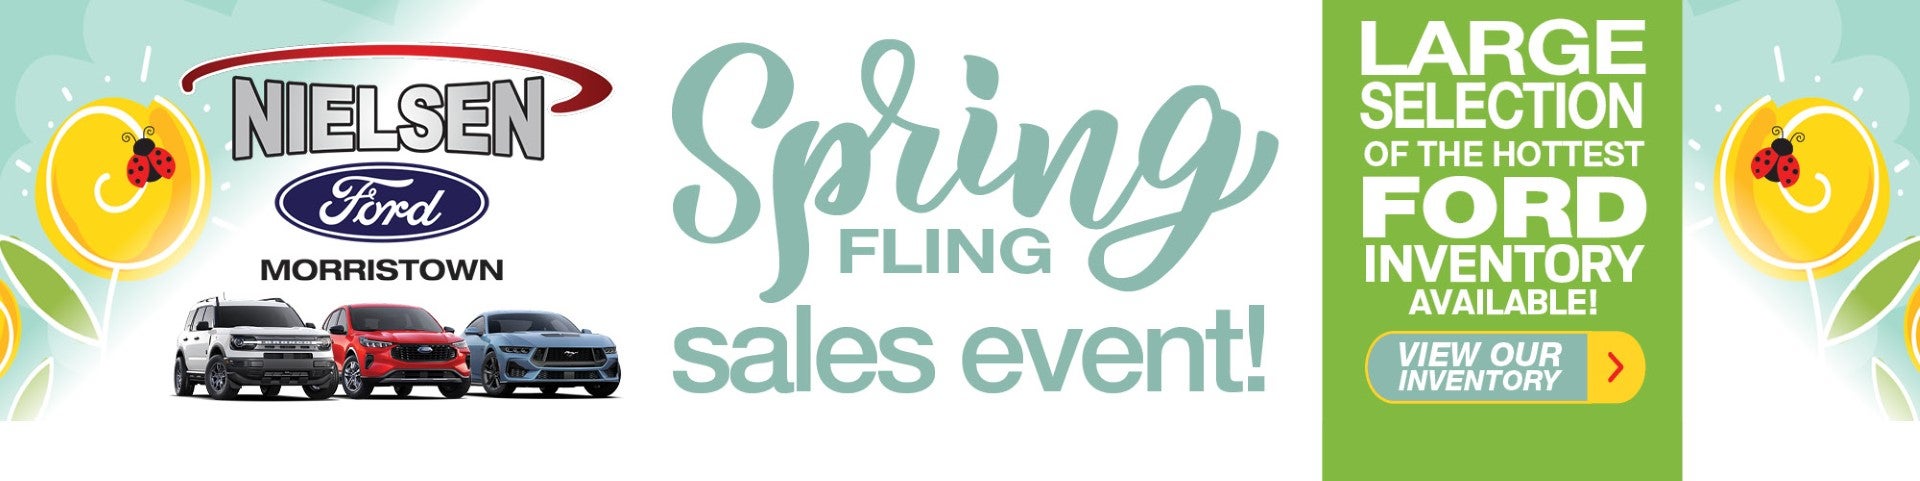 Spring Fling Sales Event